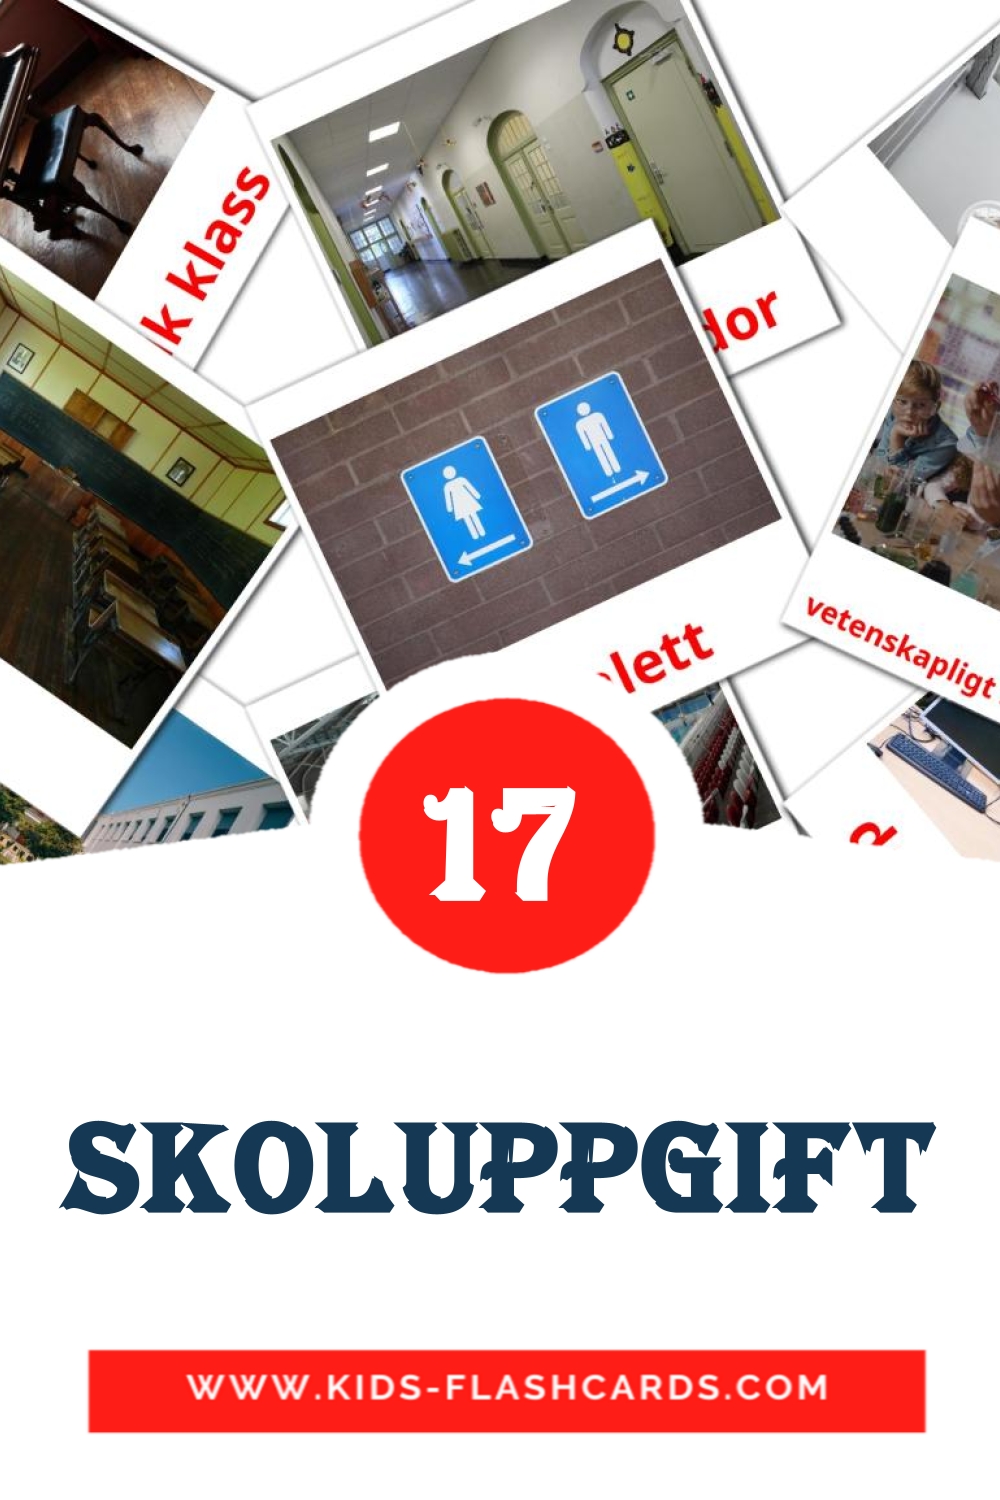 Skoluppgift на шведском для Детского Сада (17 карточек)